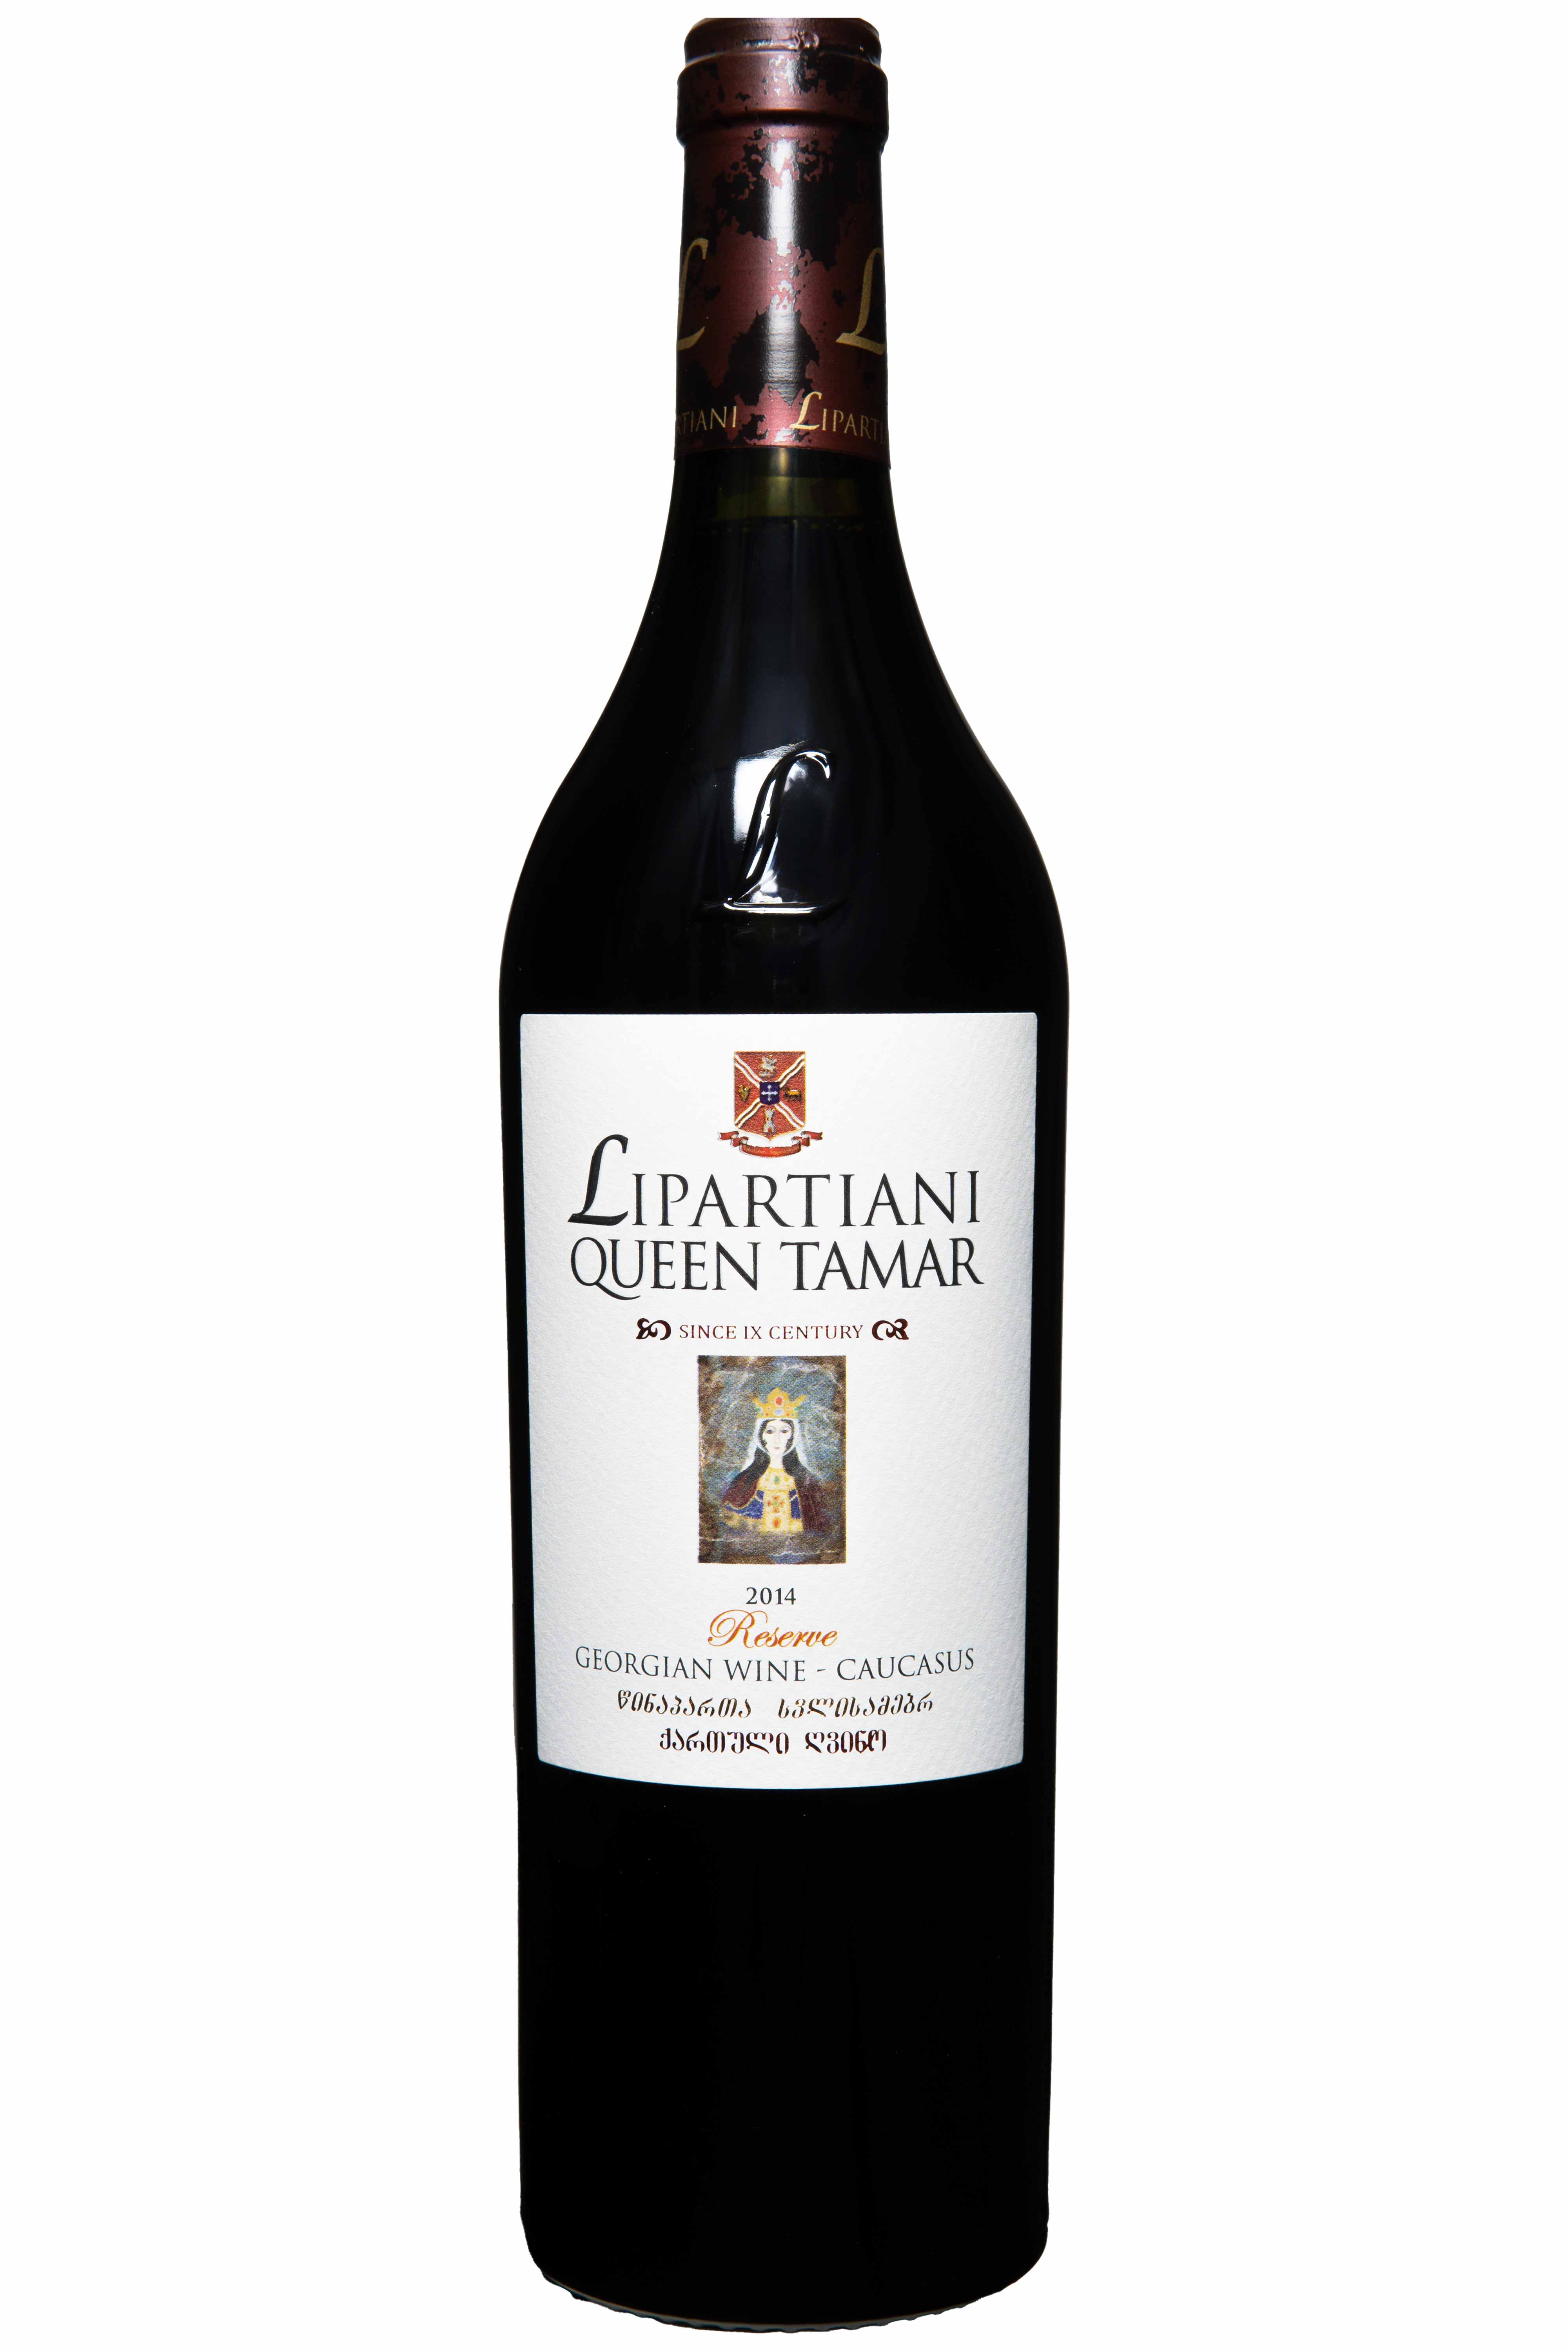 Château Lipartiani Queen Tamar 2014 trockener Rotwein aus Georgien, vollmundig mit Eichennoten